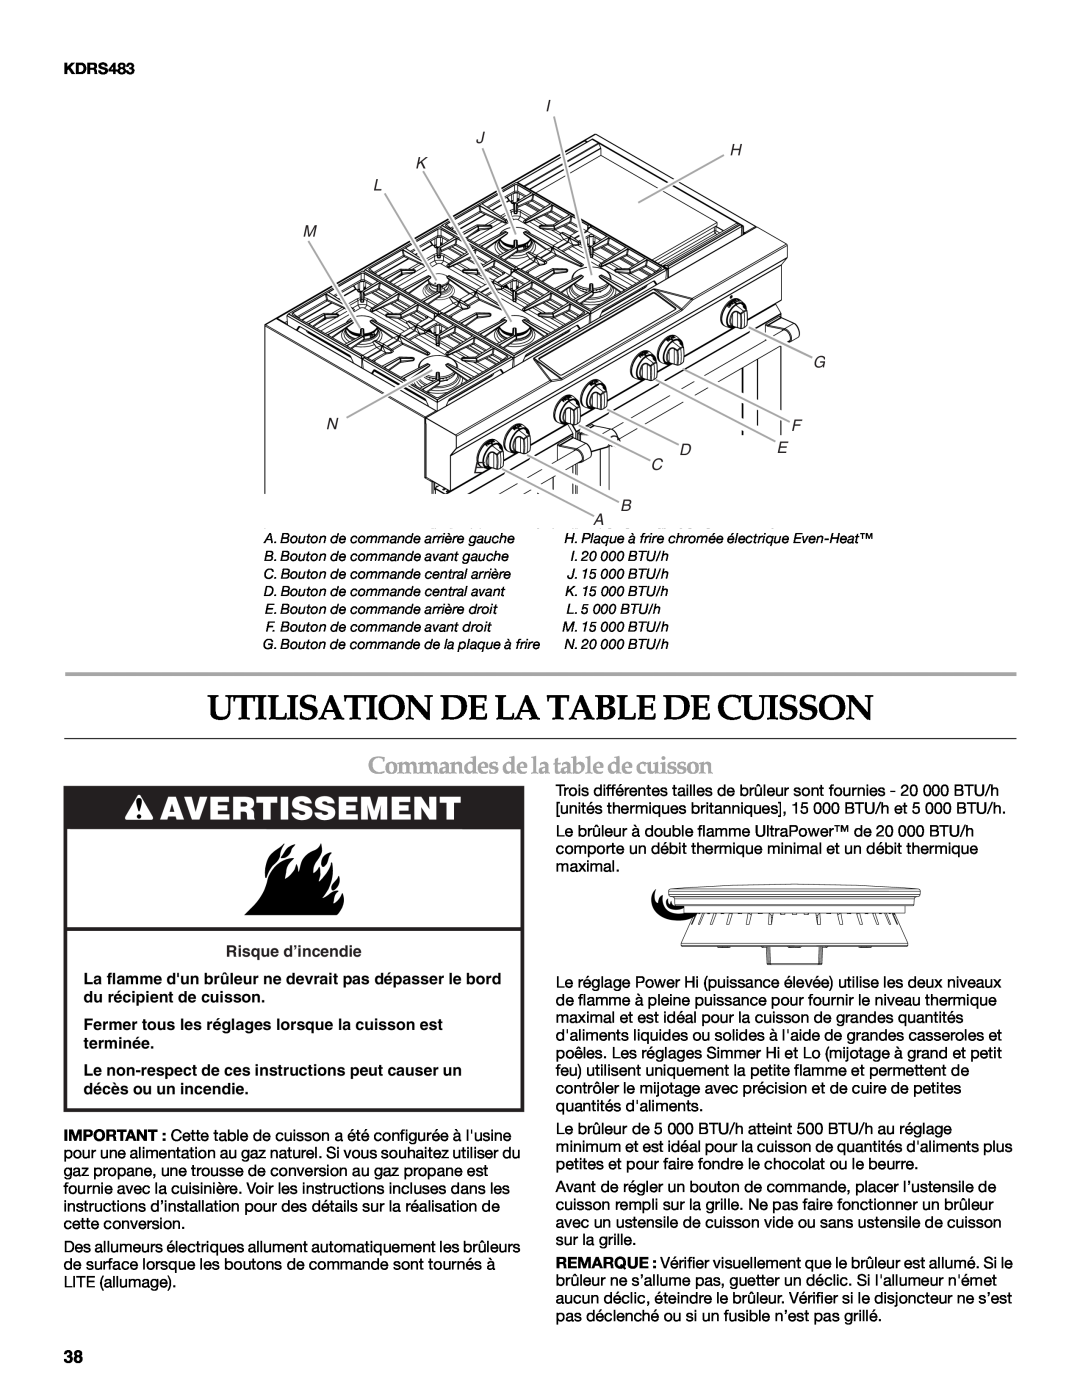 KitchenAid KDRS407 Utilisation De La Table De Cuisson, Commandesdela table decuisson, Avertissement, I J H K L M G, F De 